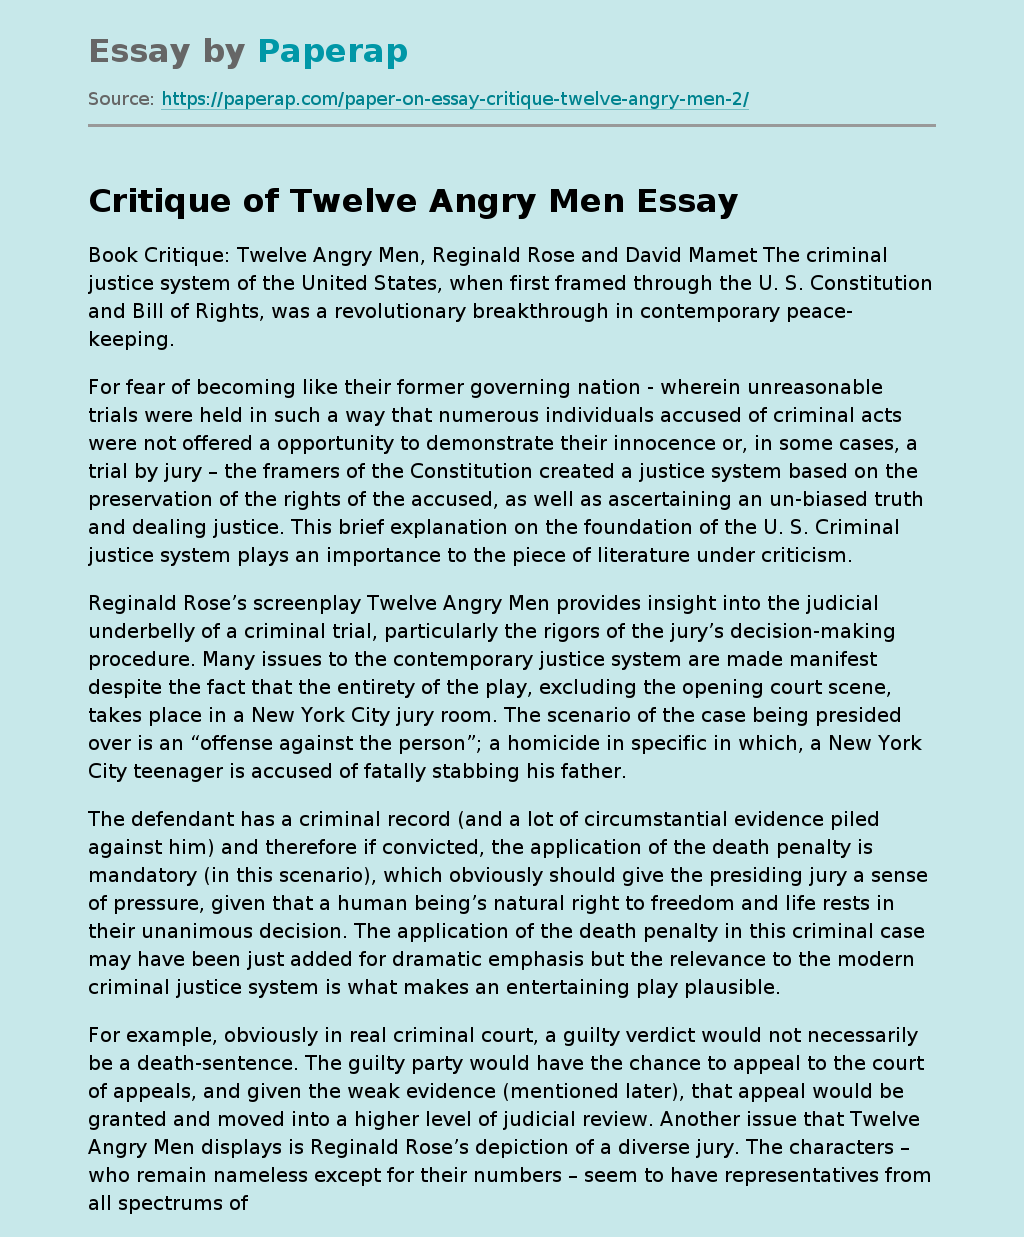 Critique of Twelve Angry Men